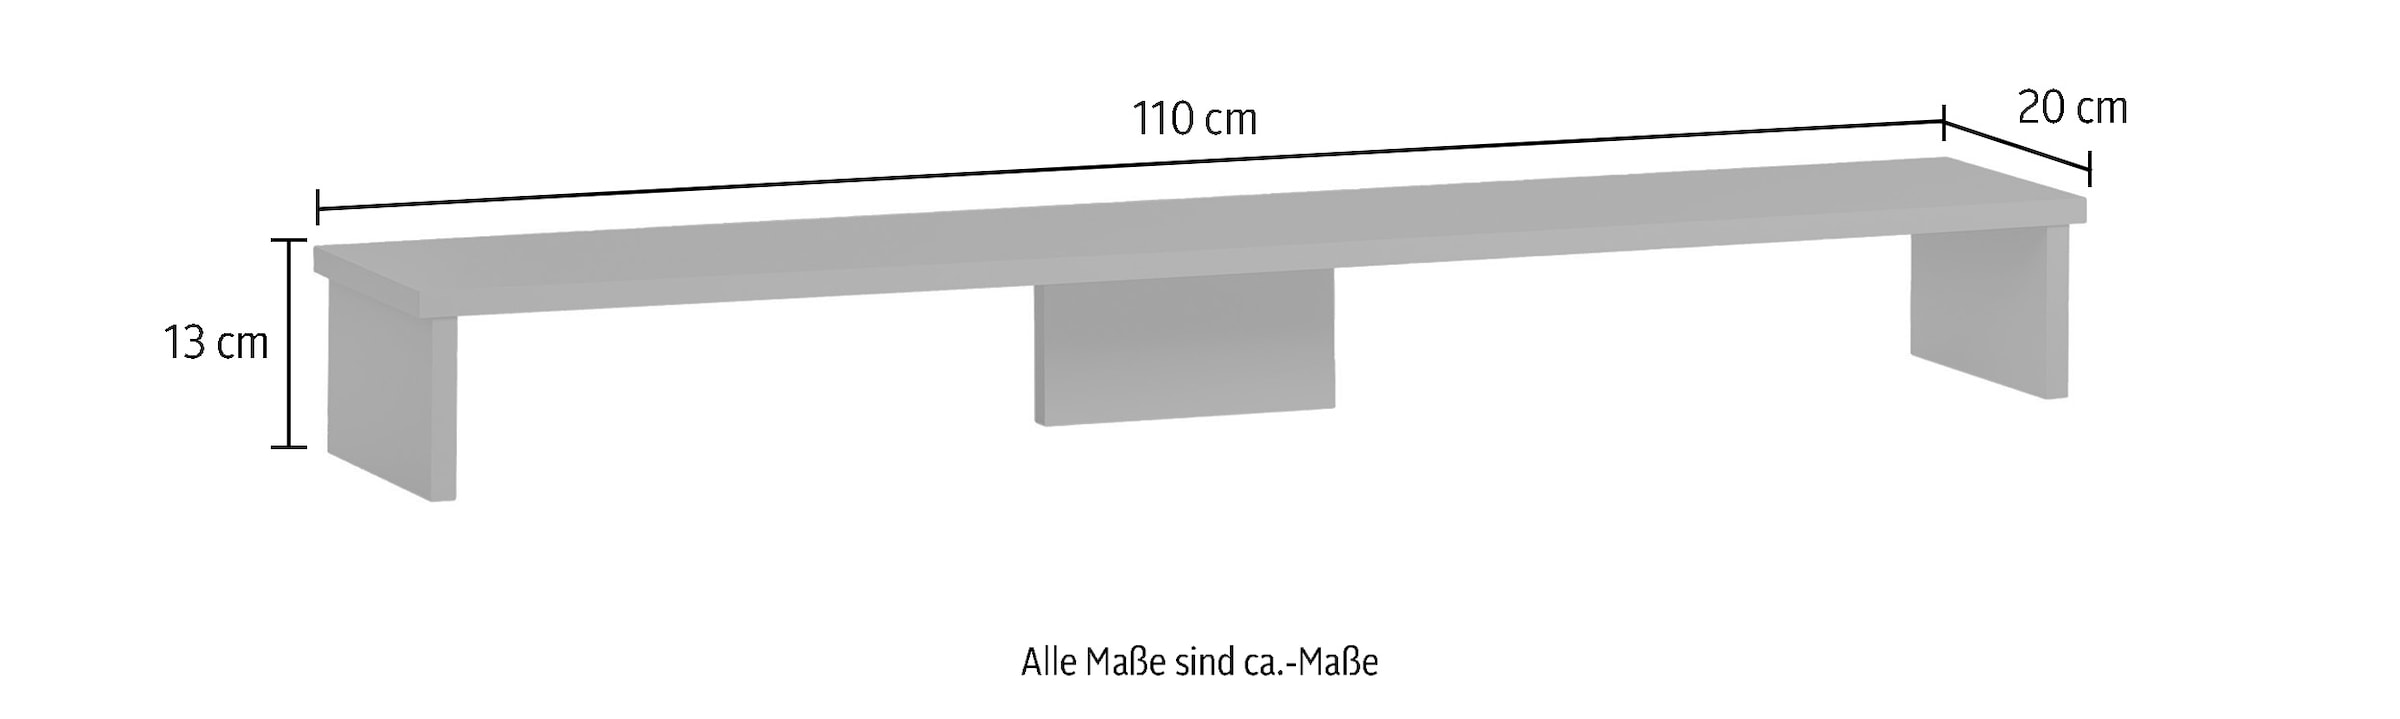 Schildmeyer Schreibtischaufsatz »Baku«, Bildschirmaufsatz, Breite 110 cm, Made in Germany